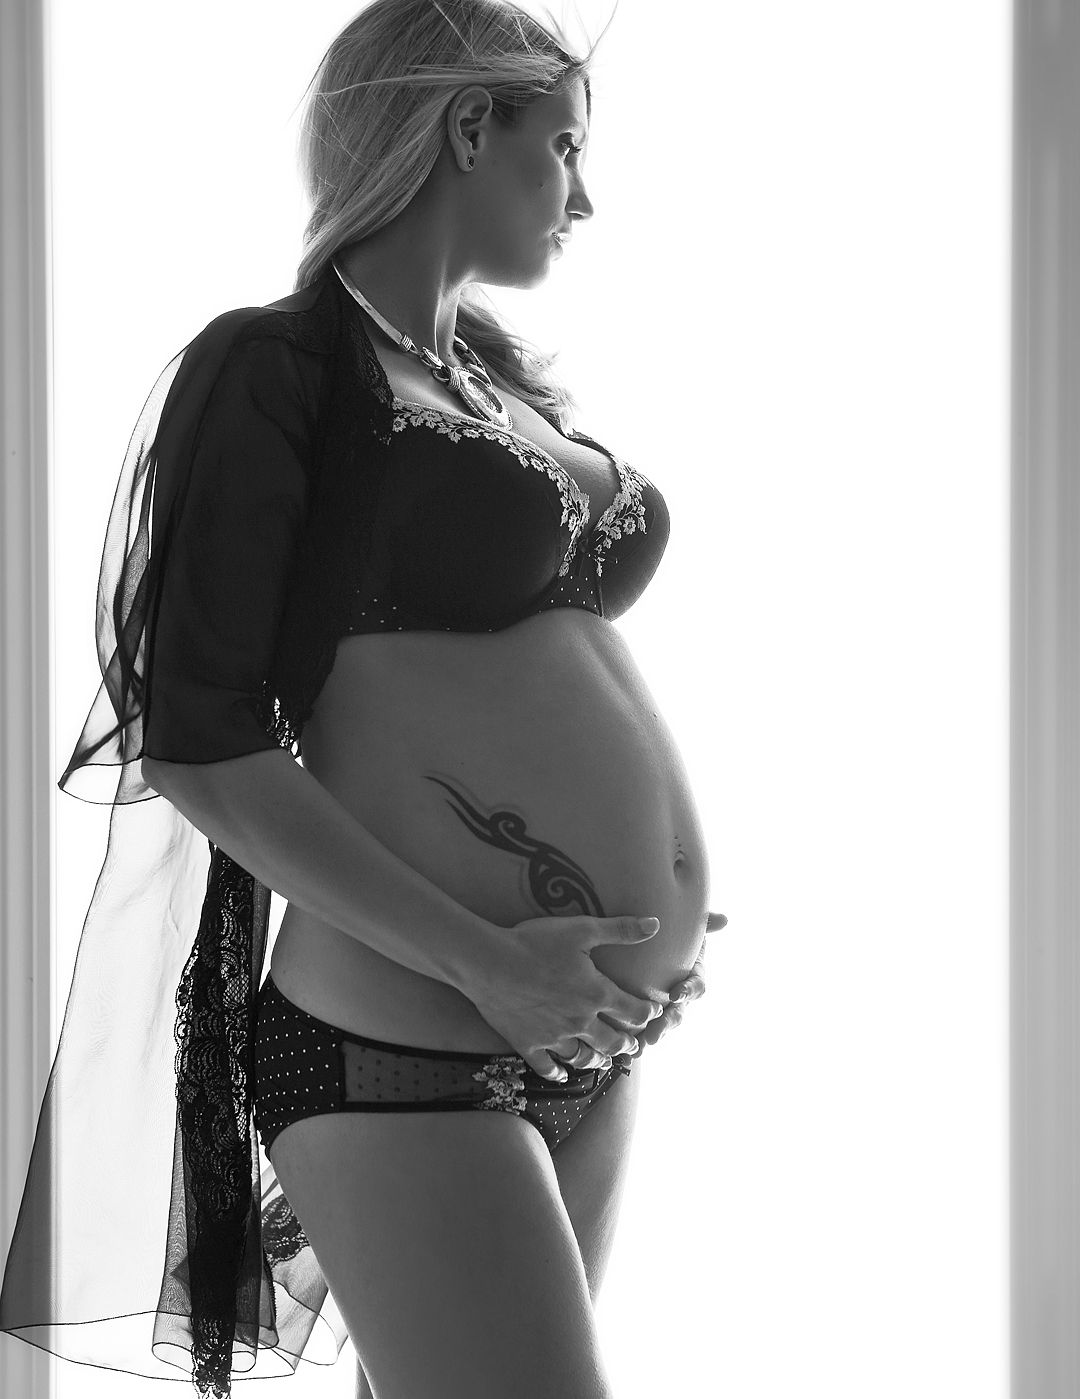 Fotos de embarazo tiernas, naturales y originales para embarazadas felices. Fotografías emotivas y naturales de maternidad.